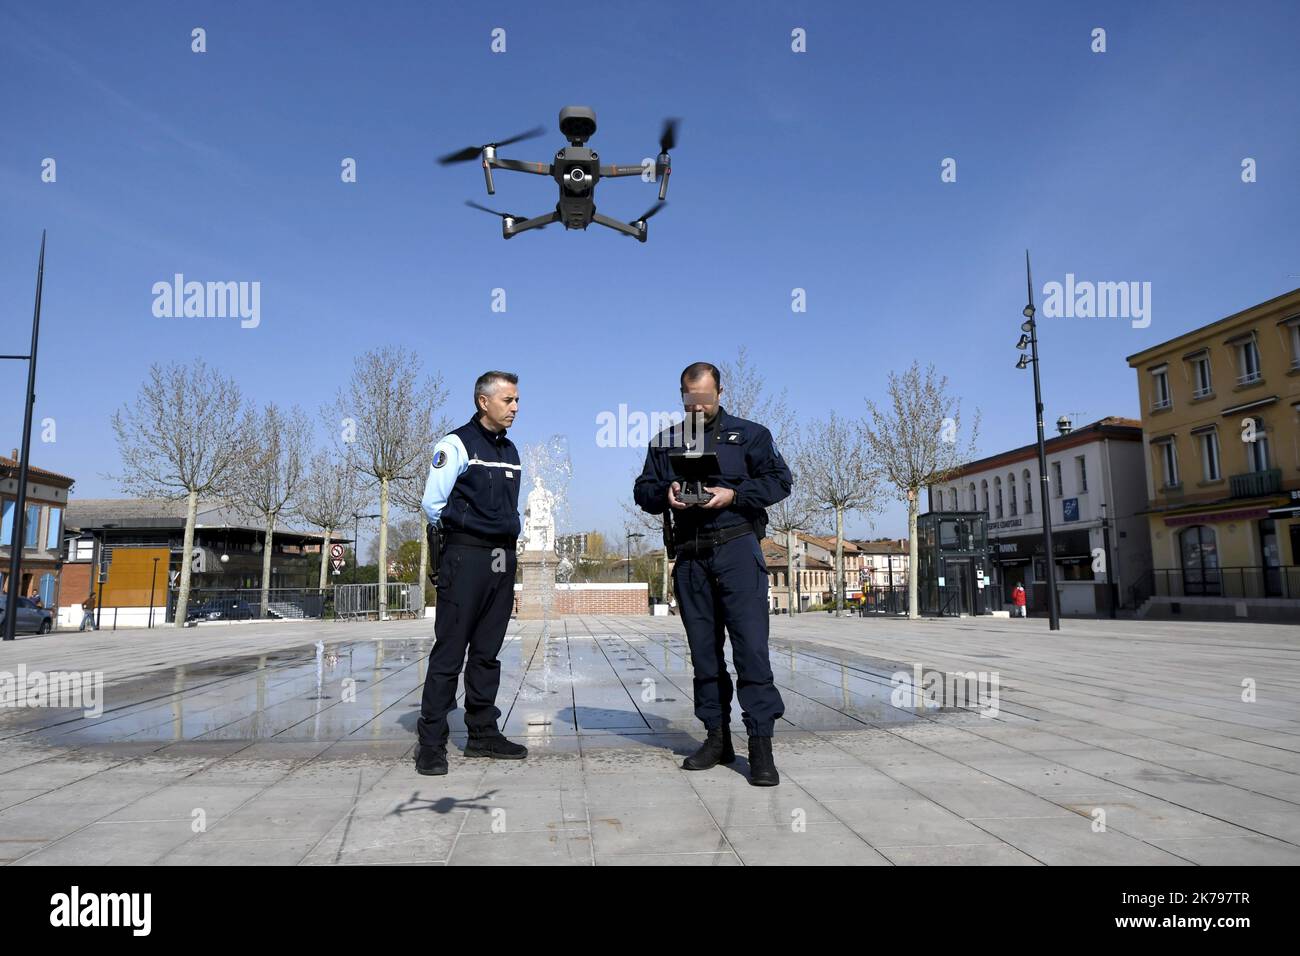 Drone utilisé pour le contrôle des mesures anti-coronavirus. France Muret, 28 mars 2020 Banque D'Images